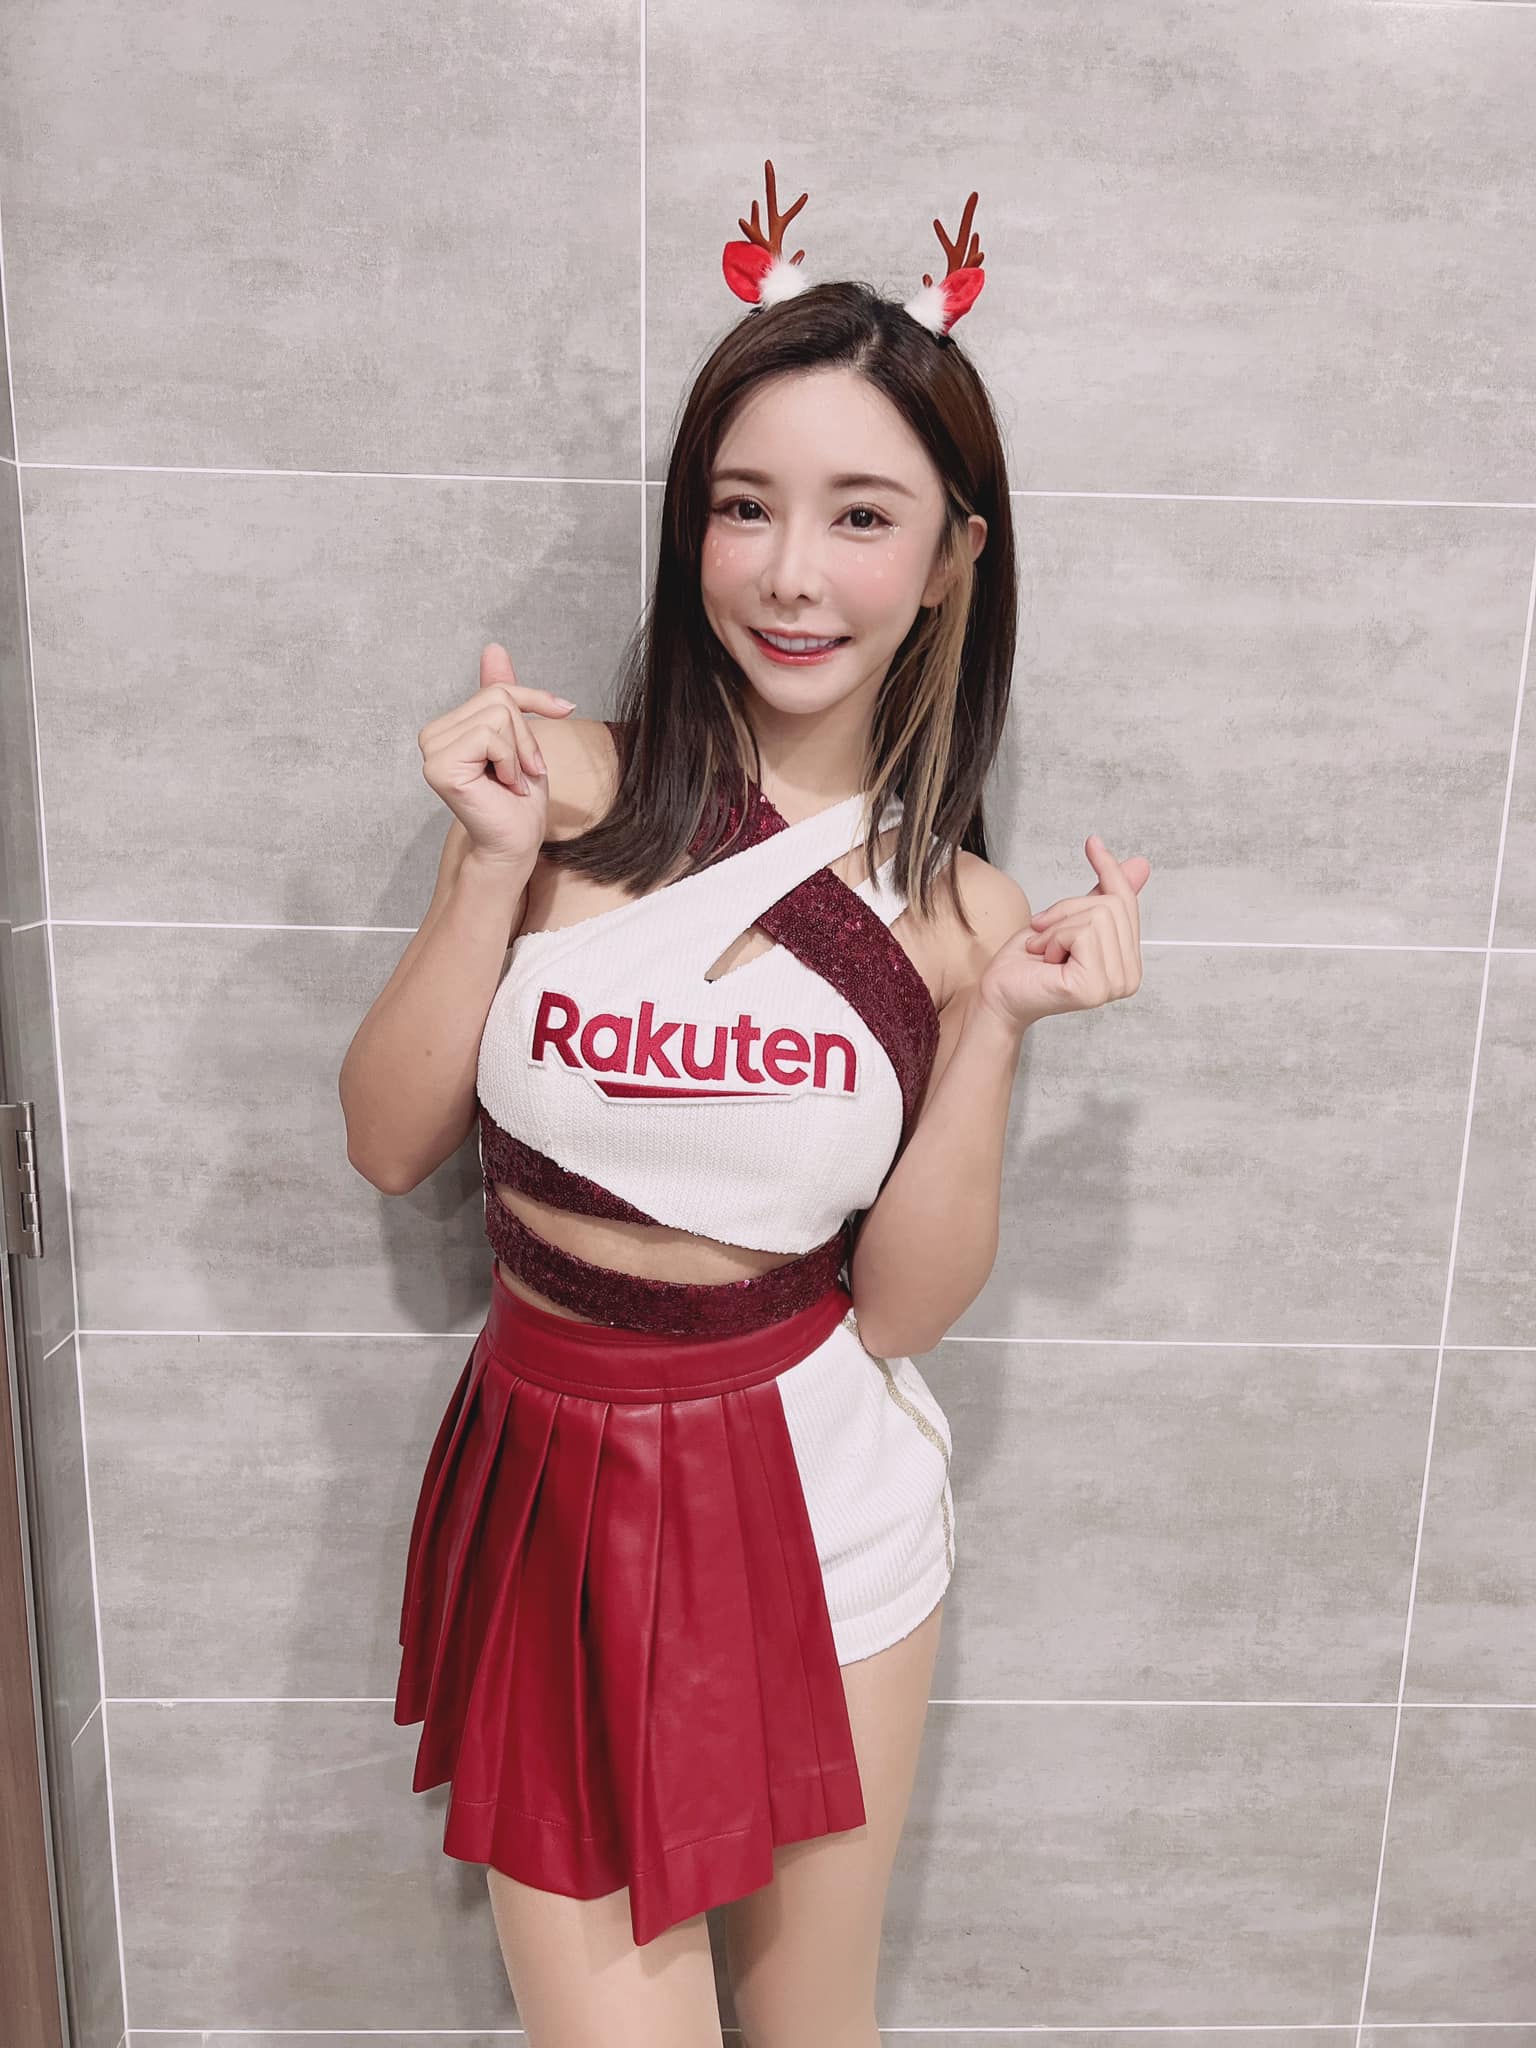 中華職棒樂天桃猿啦啦隊「Rakuten Girls」巫苡萱外型亮眼。